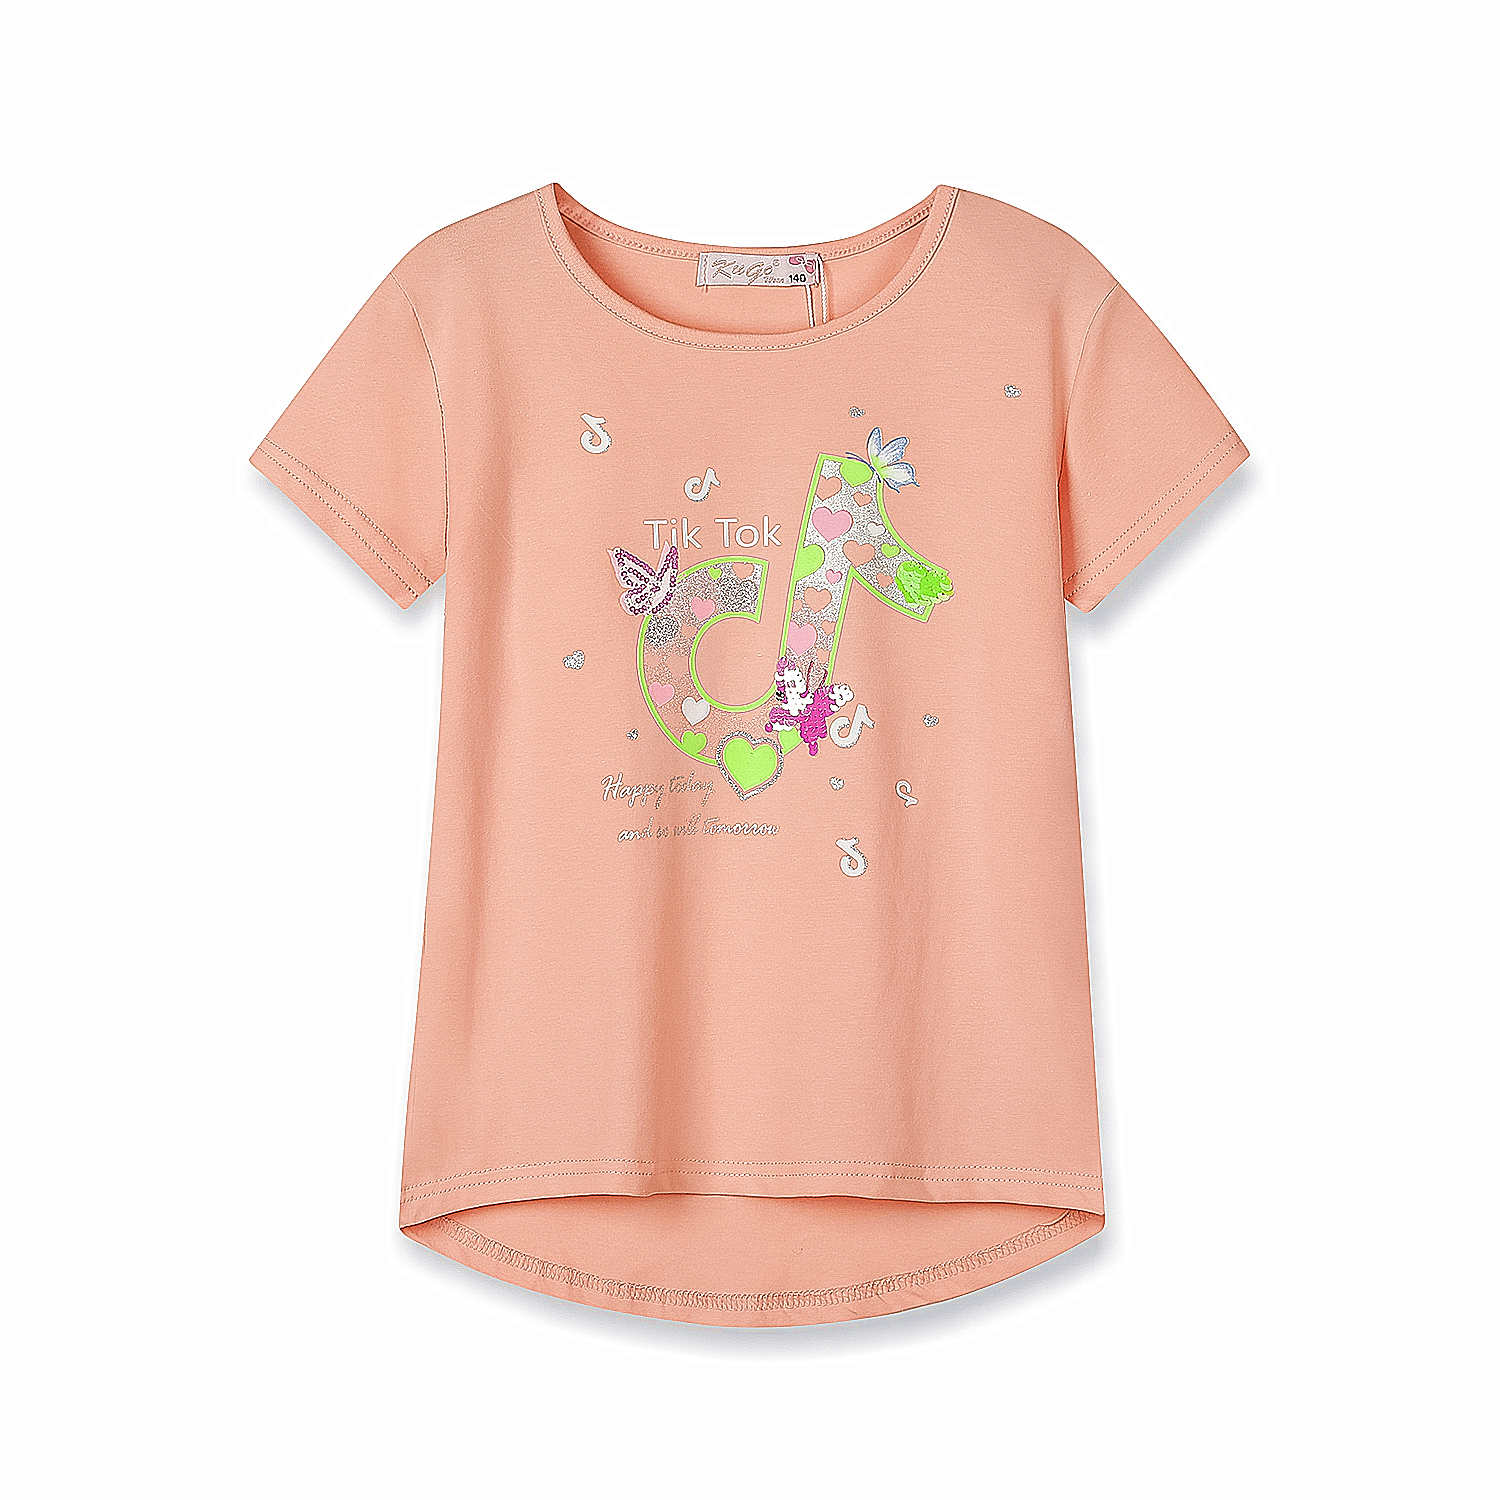 Dívčí triko s flitry - KUGO WK0808, lososová Barva: Lososová, Velikost: 164